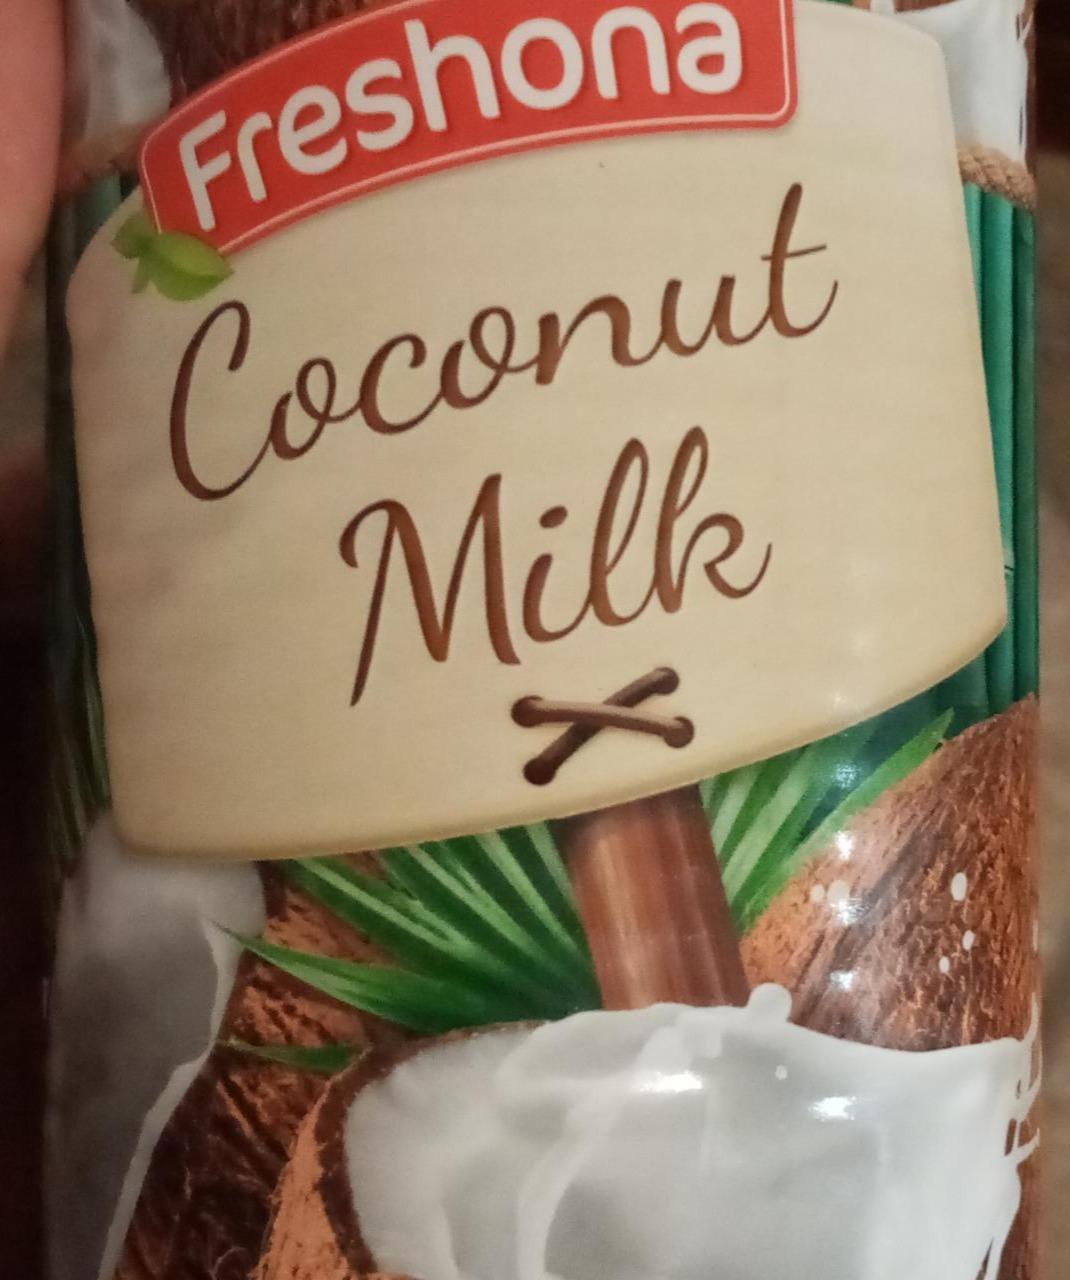 Fotografie - Coconut Milk Freshona